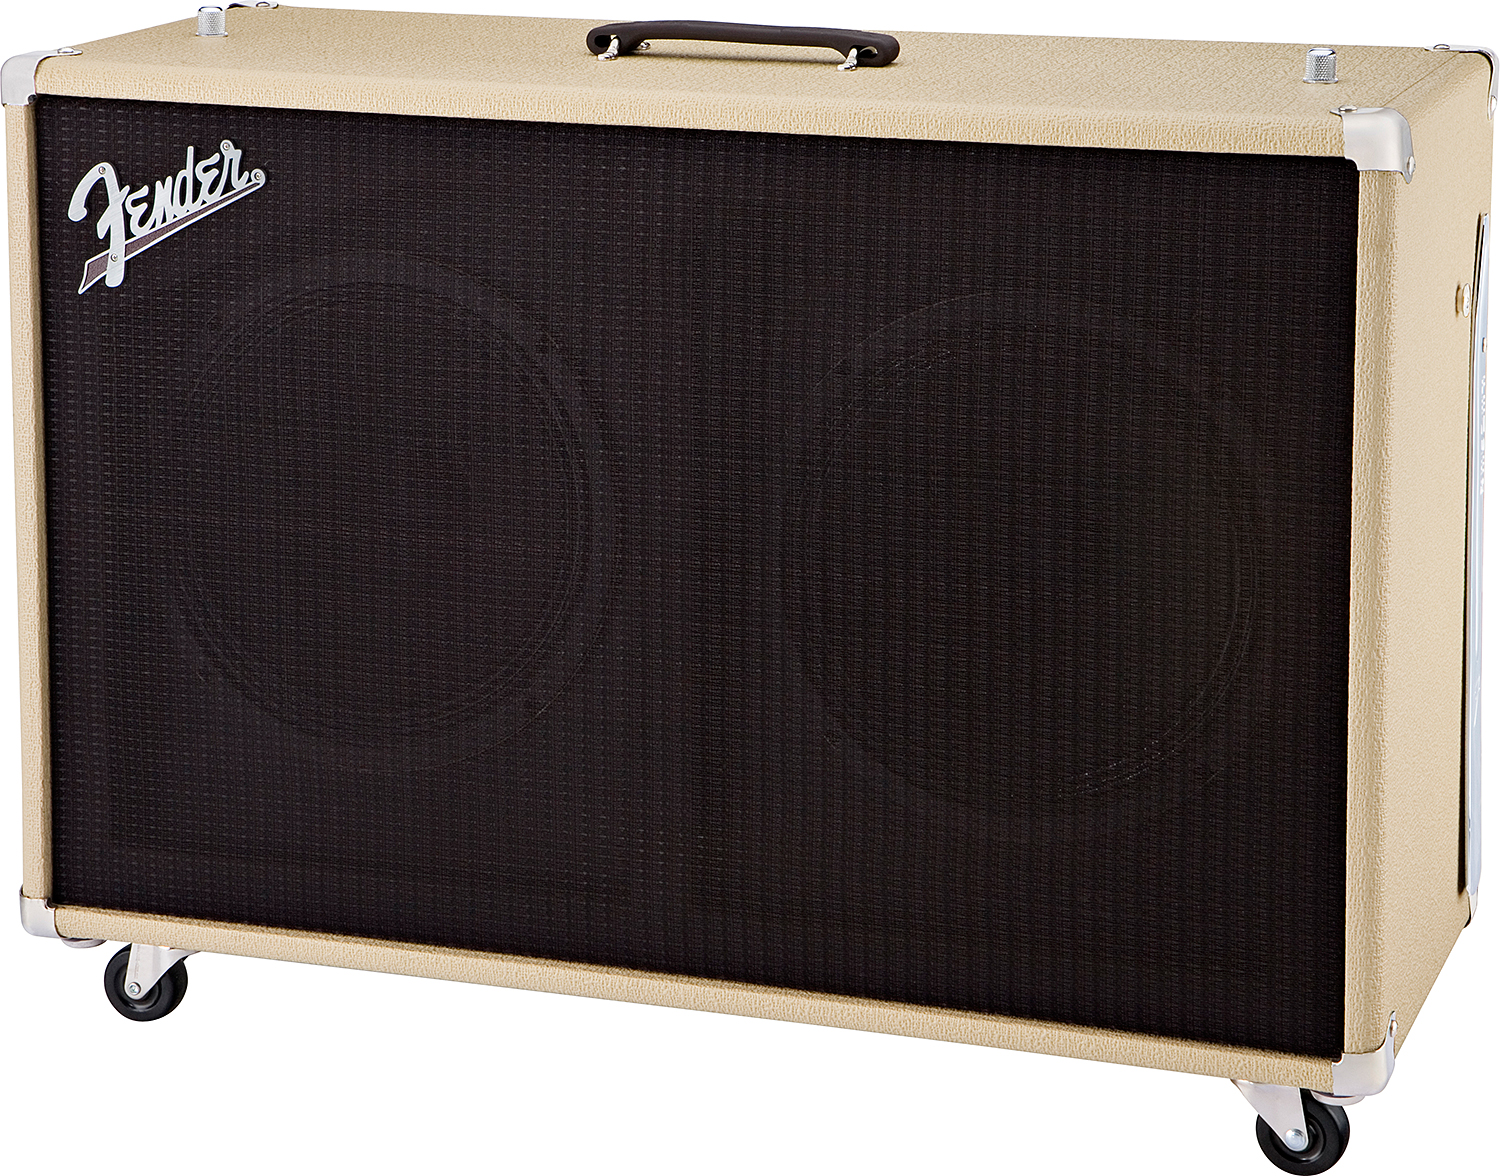 Fender Super Sonic 60 212 Enclosure 2x12 120w Blonde - Boxen für E-Gitarre Verstärker - Variation 1